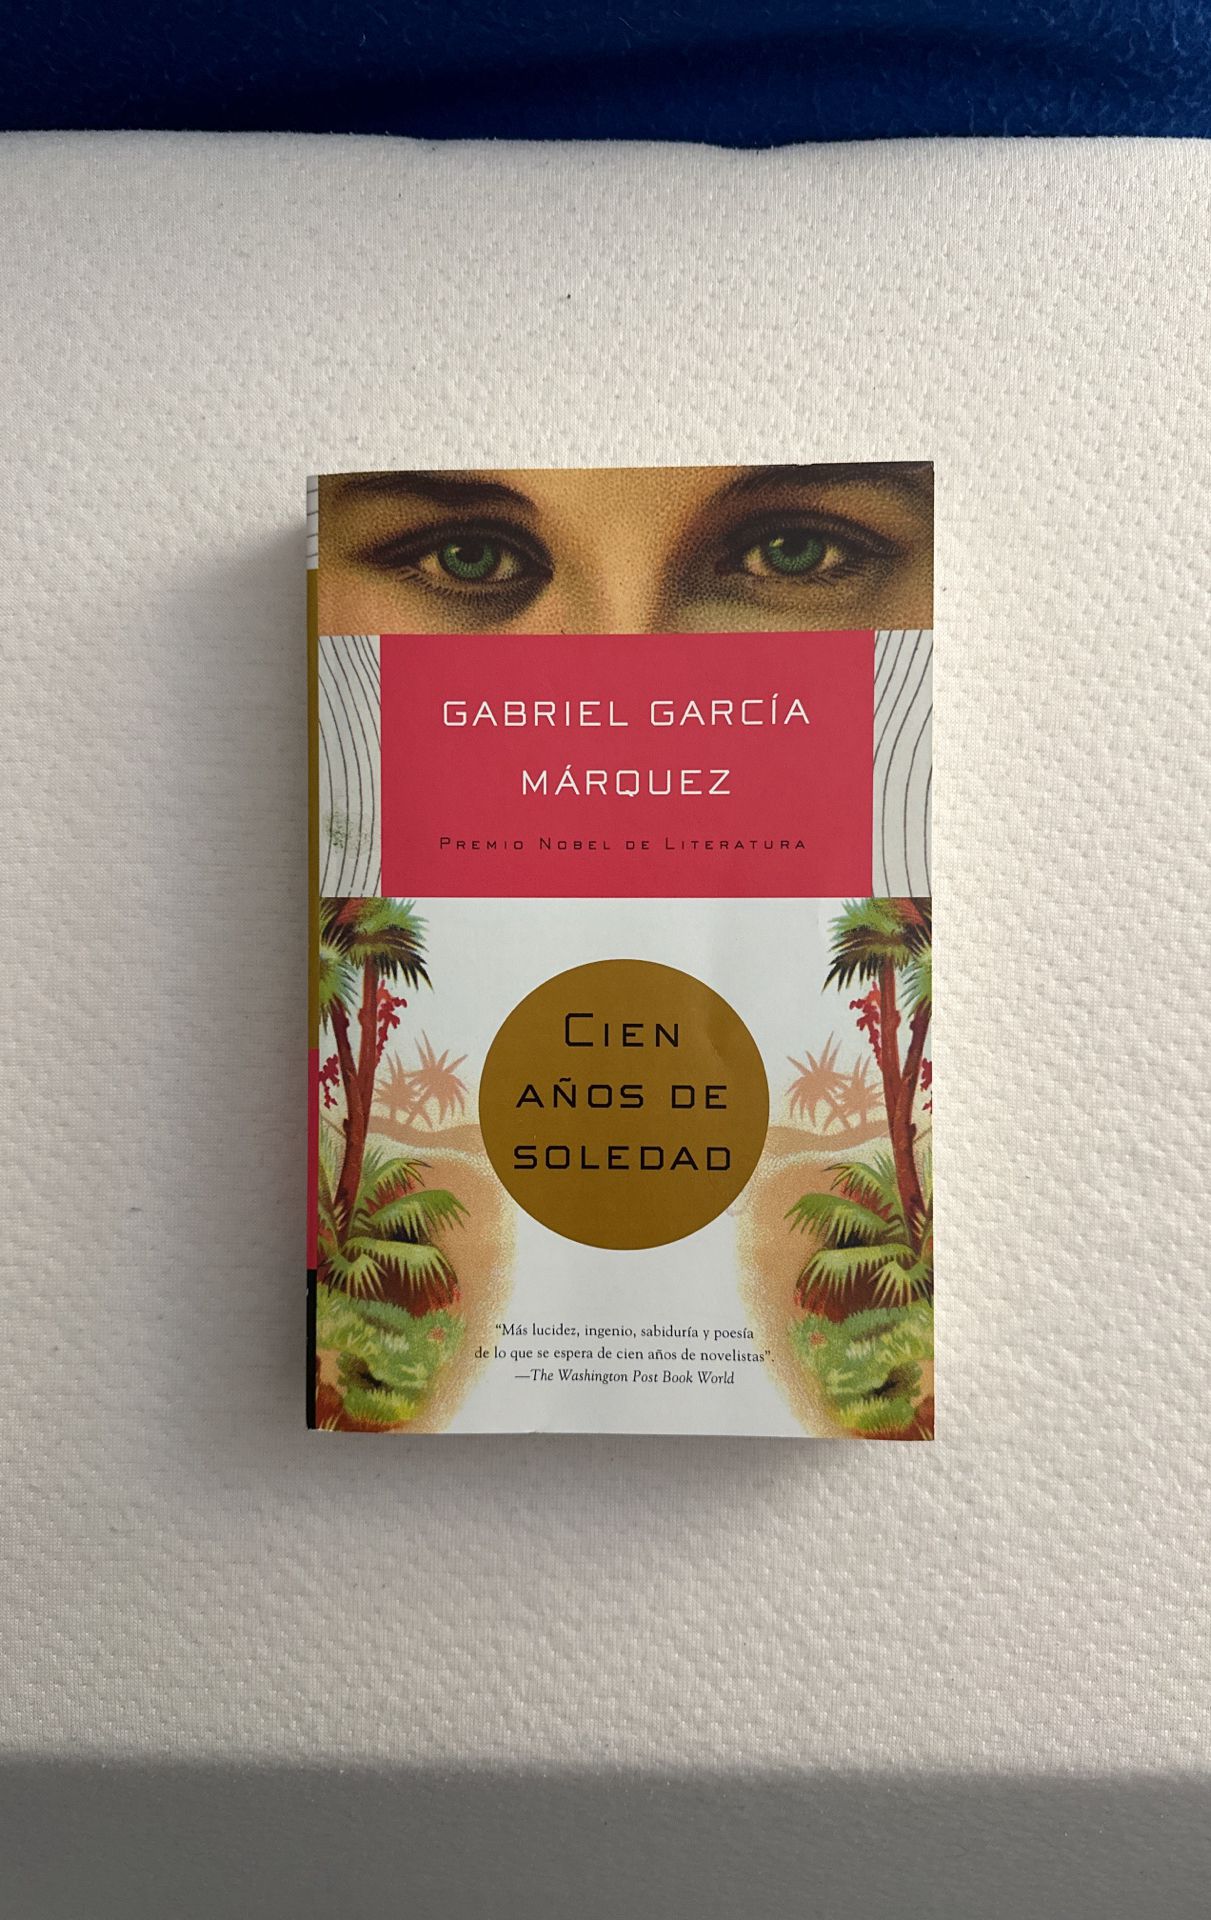 Book - Gabriel Garcia Marquez - Cien años de Soledad - Nobel prize Winner